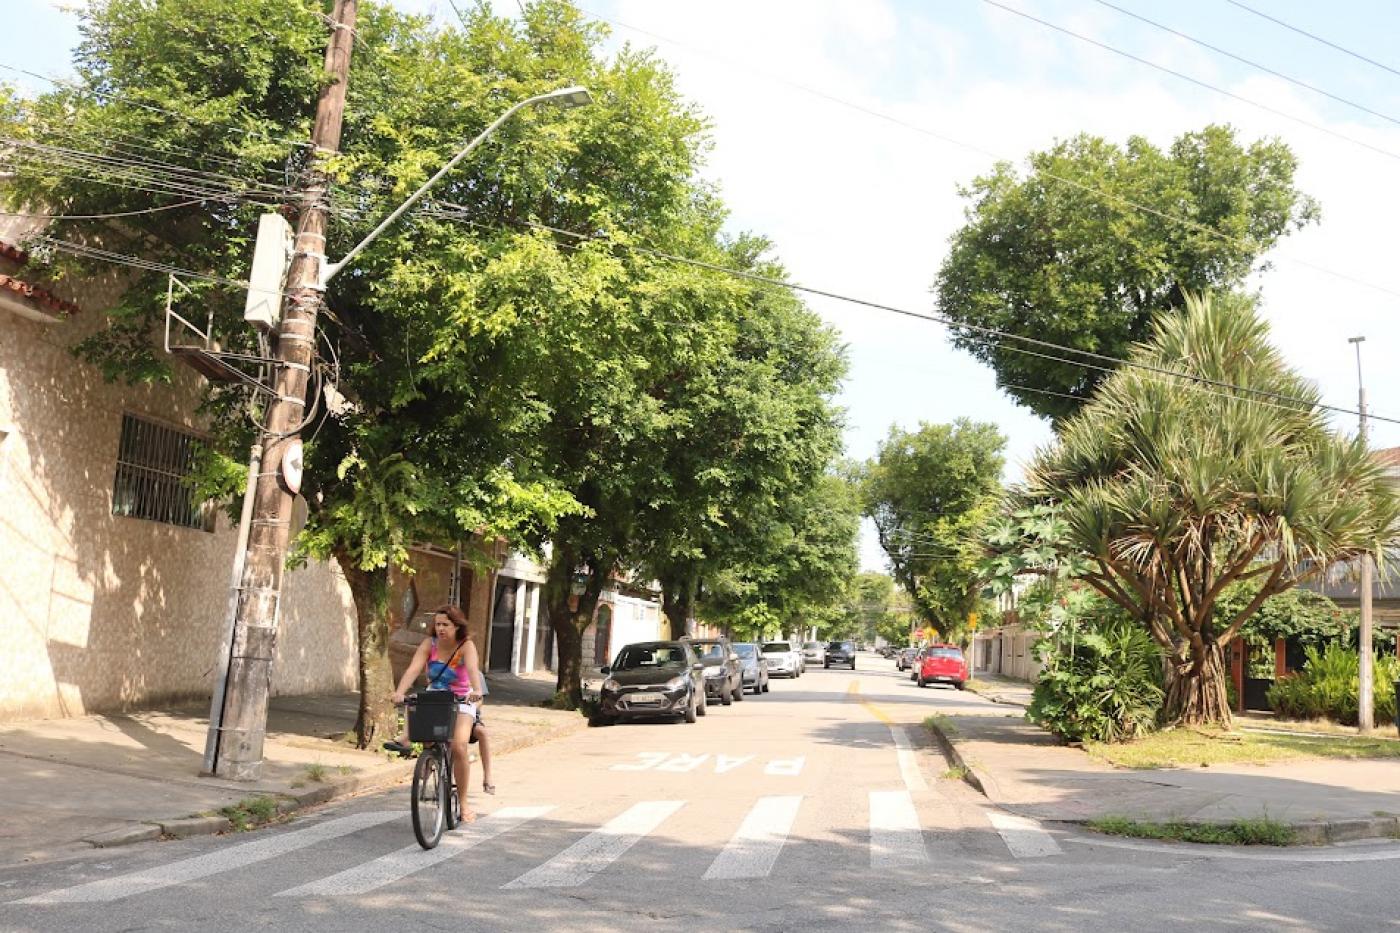 vista geral de rua arborizada. À frente e à esquerda, uma mulher está dirigindo uma bicicleta. #paratodosverem